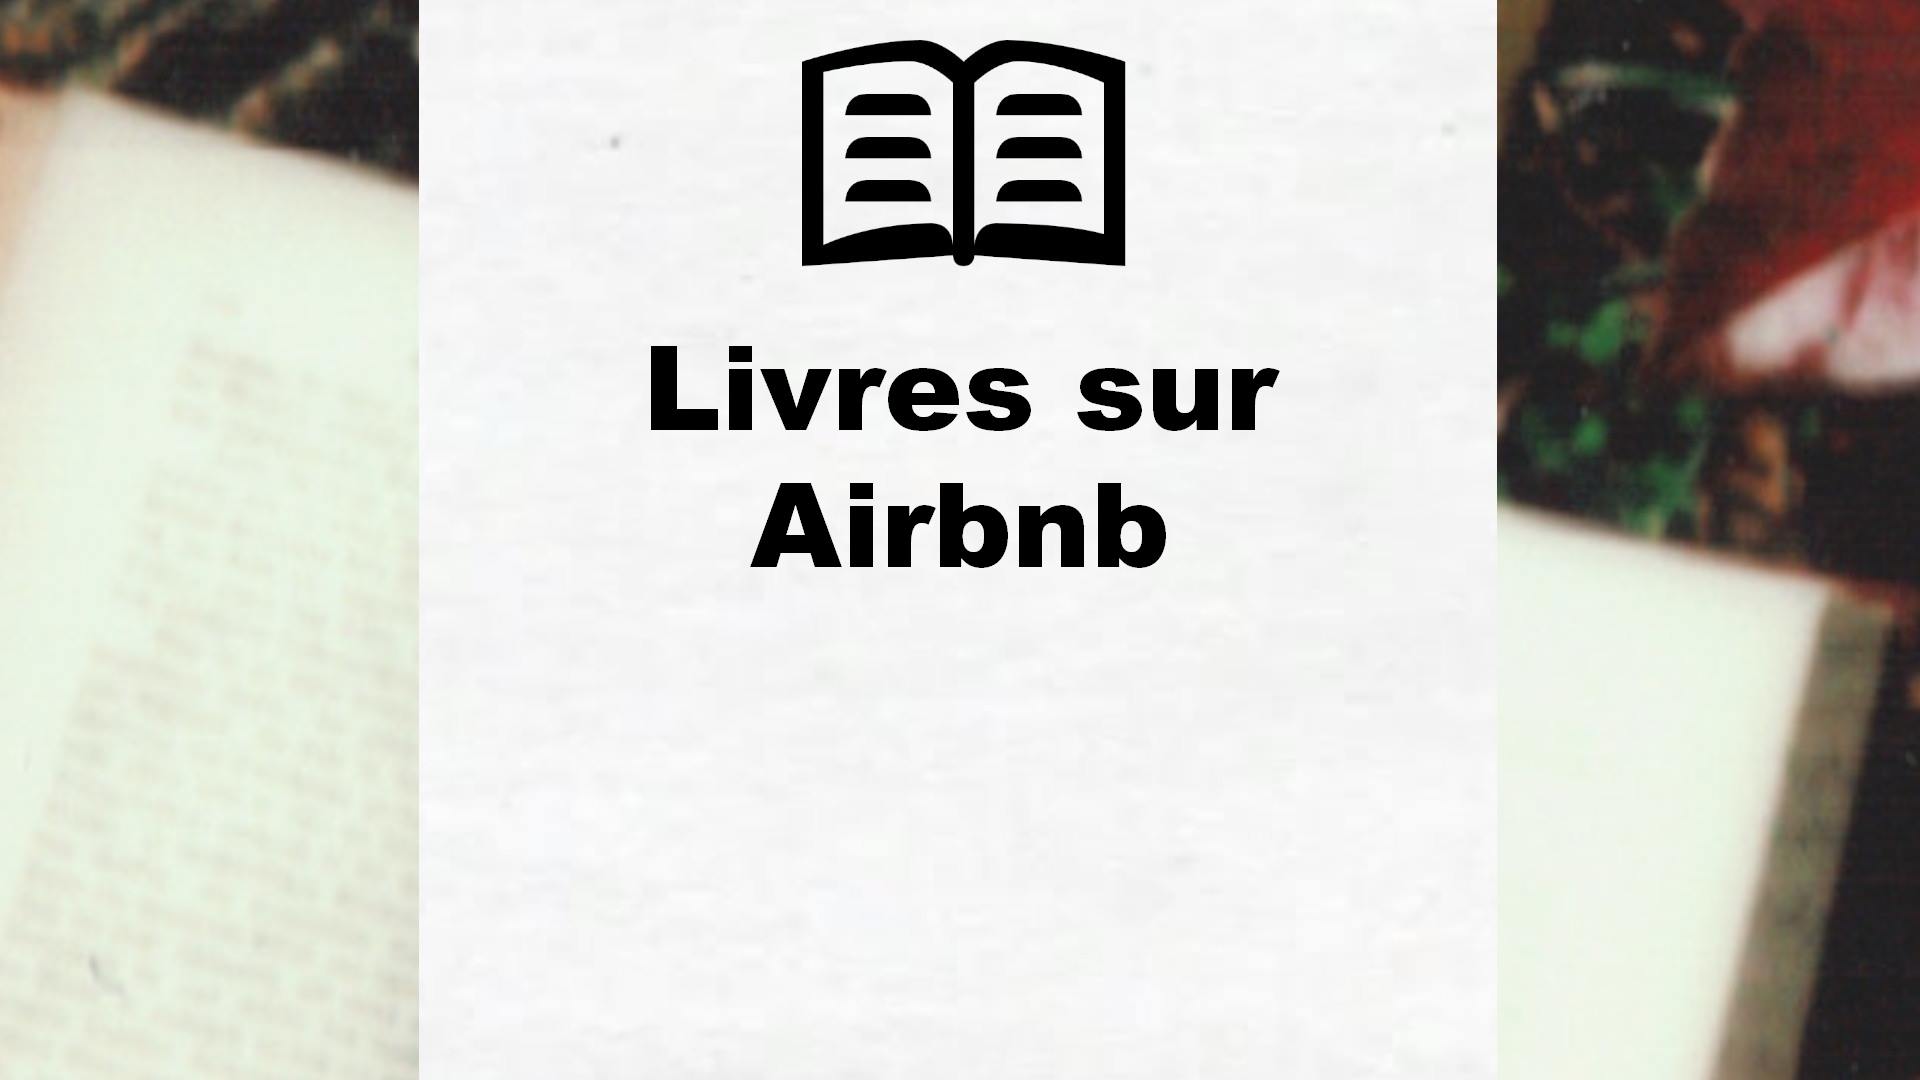 Livres sur Airbnb